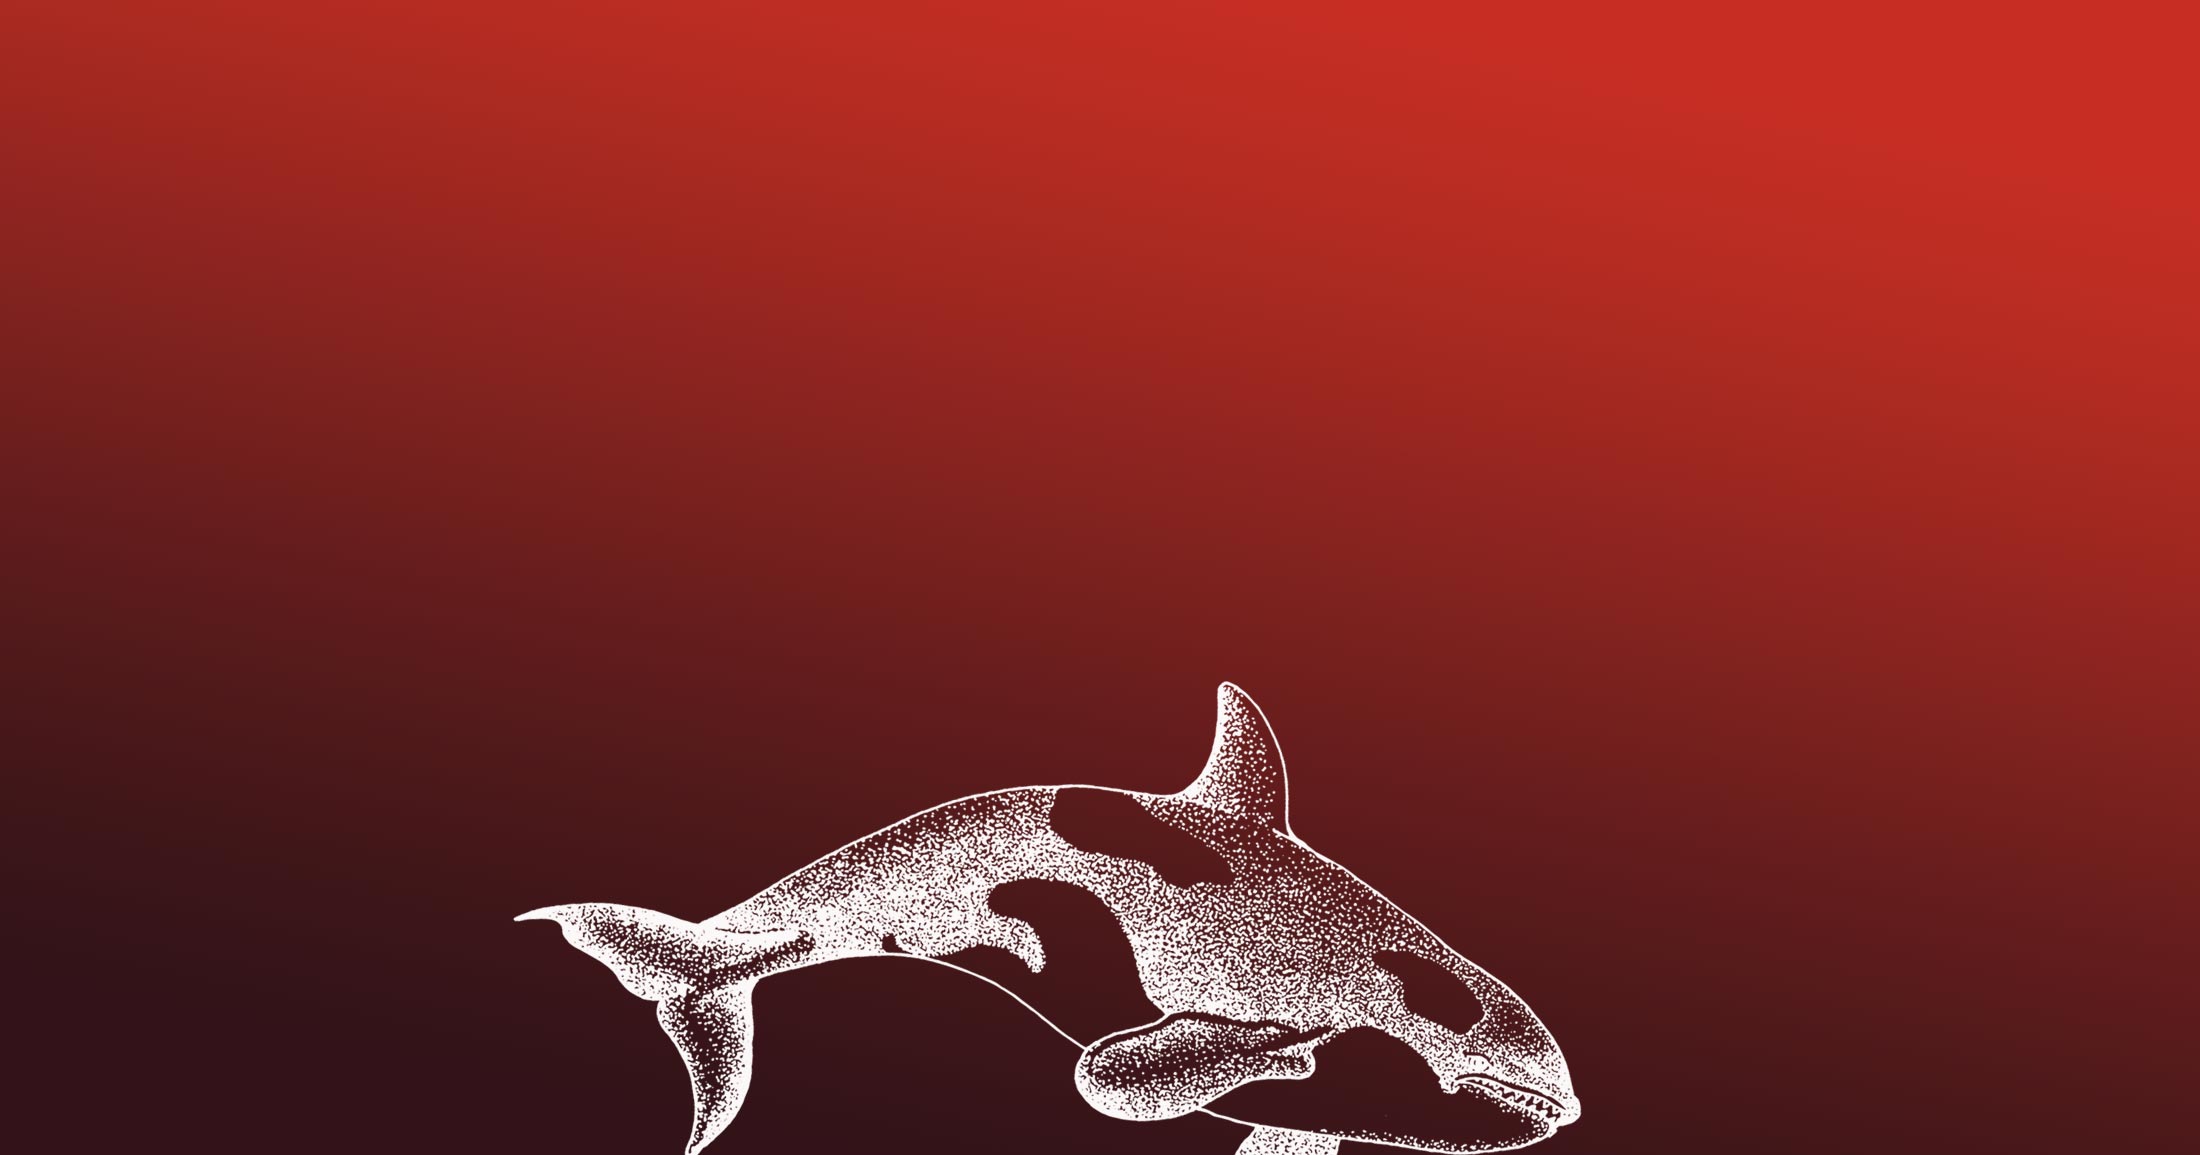 Killer whale diving illustration.